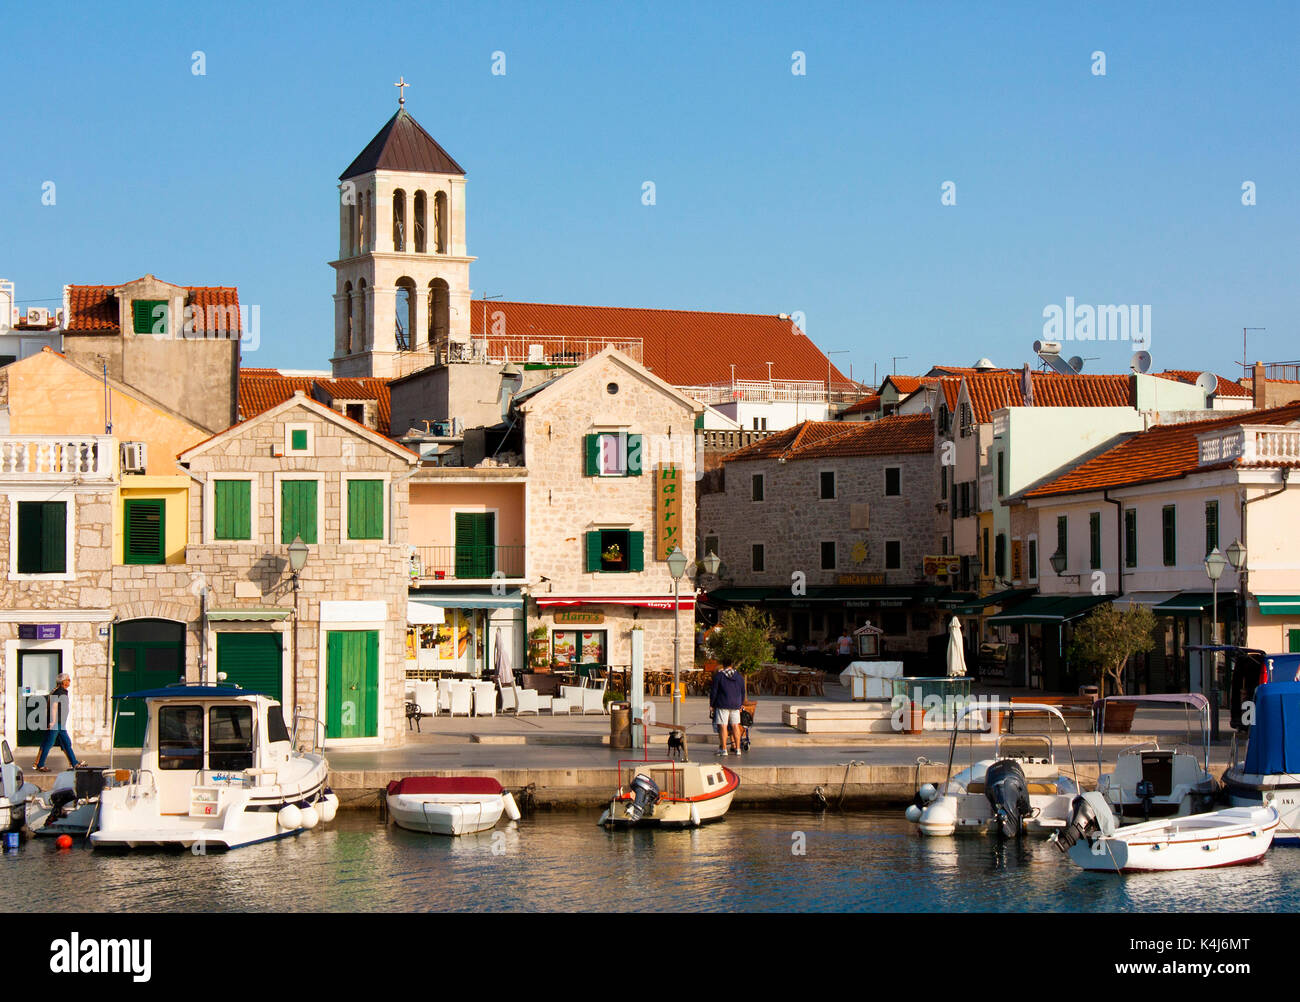 Vodice, Kroatien - 22. August 2017: Sonniger Morgen in kleinen mediterranen Stadt mit Häusern aus Stein und alten Kirchturm. Mit angelegten Boote auf der d Stockfoto